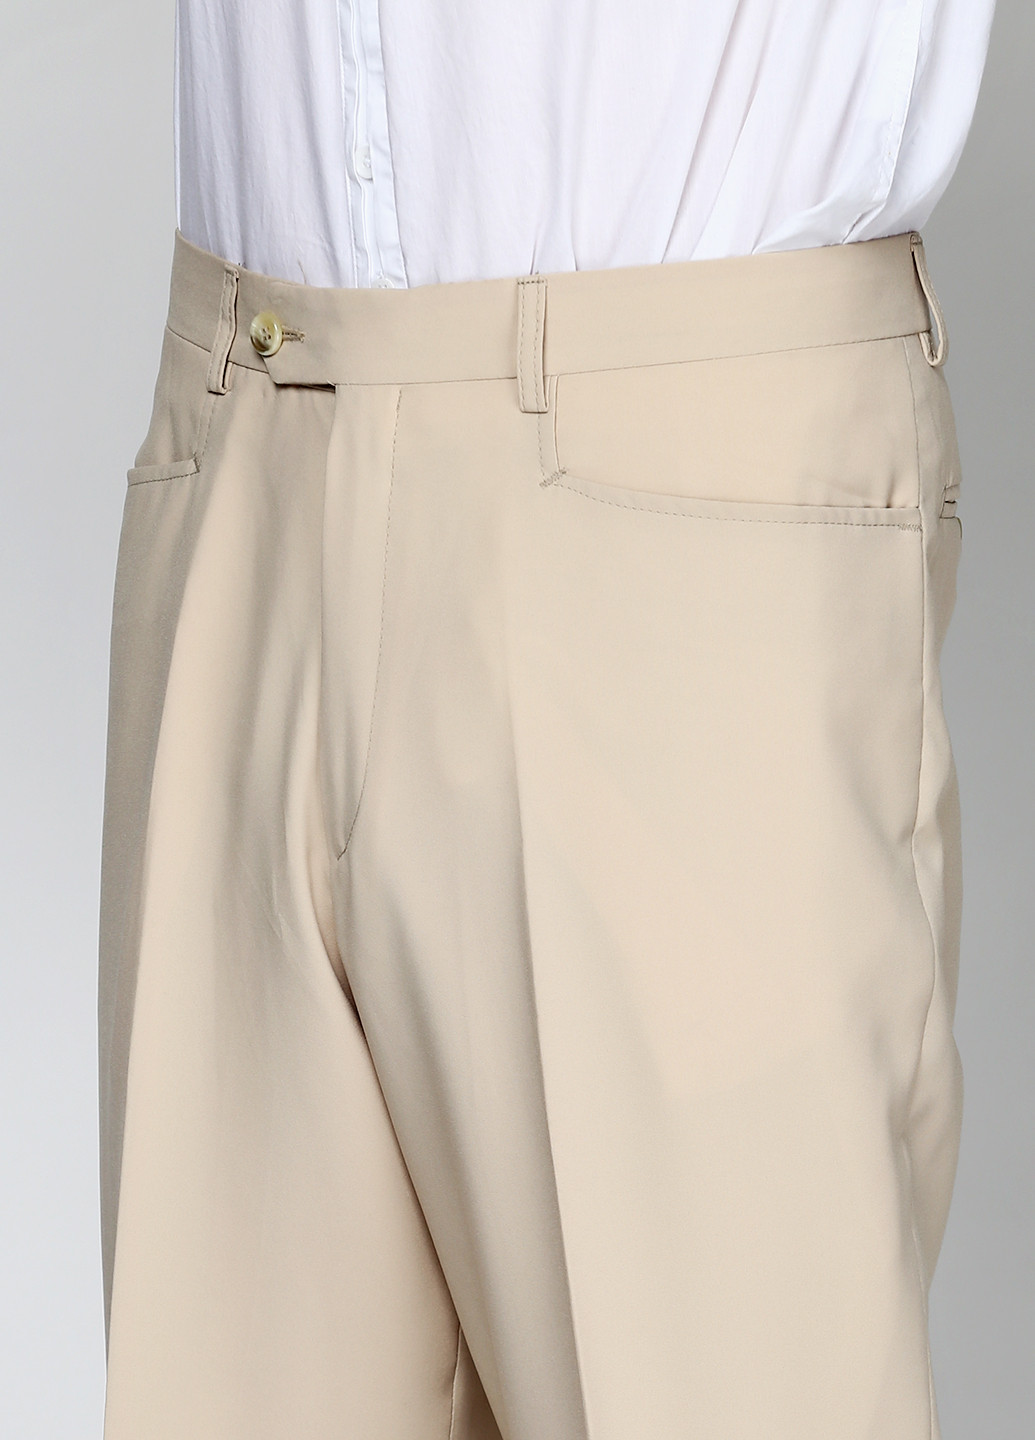 Светло-бежевый демисезонный костюм (пиджак, брюки) брючный Bocodo